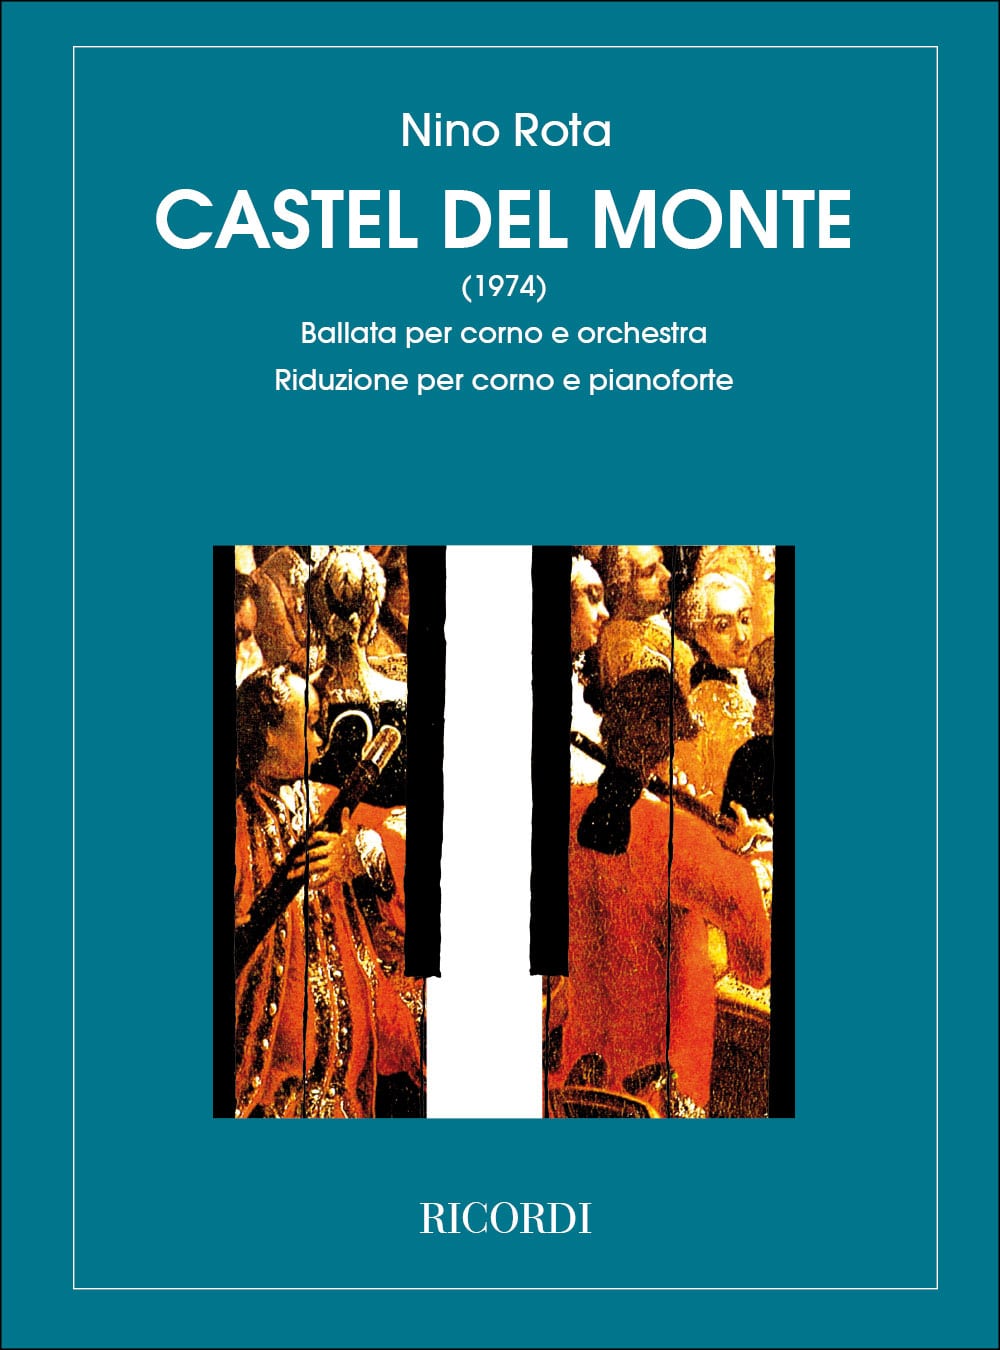 RICORDI ROTA N. - CASTEL DEL MONTE - BALLATA - COR ET ORCHESTRE